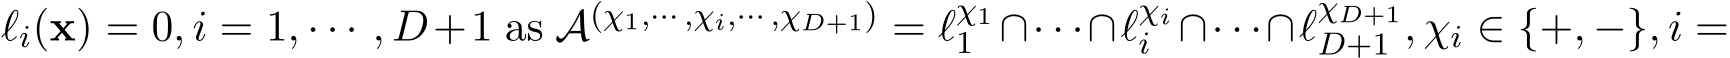 ℓi(x) = 0, i = 1, · · · , D+1 as A(χ1,··· ,χi,··· ,χD+1) = ℓχ11 ∩· · ·∩ℓχii ∩· · ·∩ℓχD+1D+1 , χi ∈ {+, −}, i =